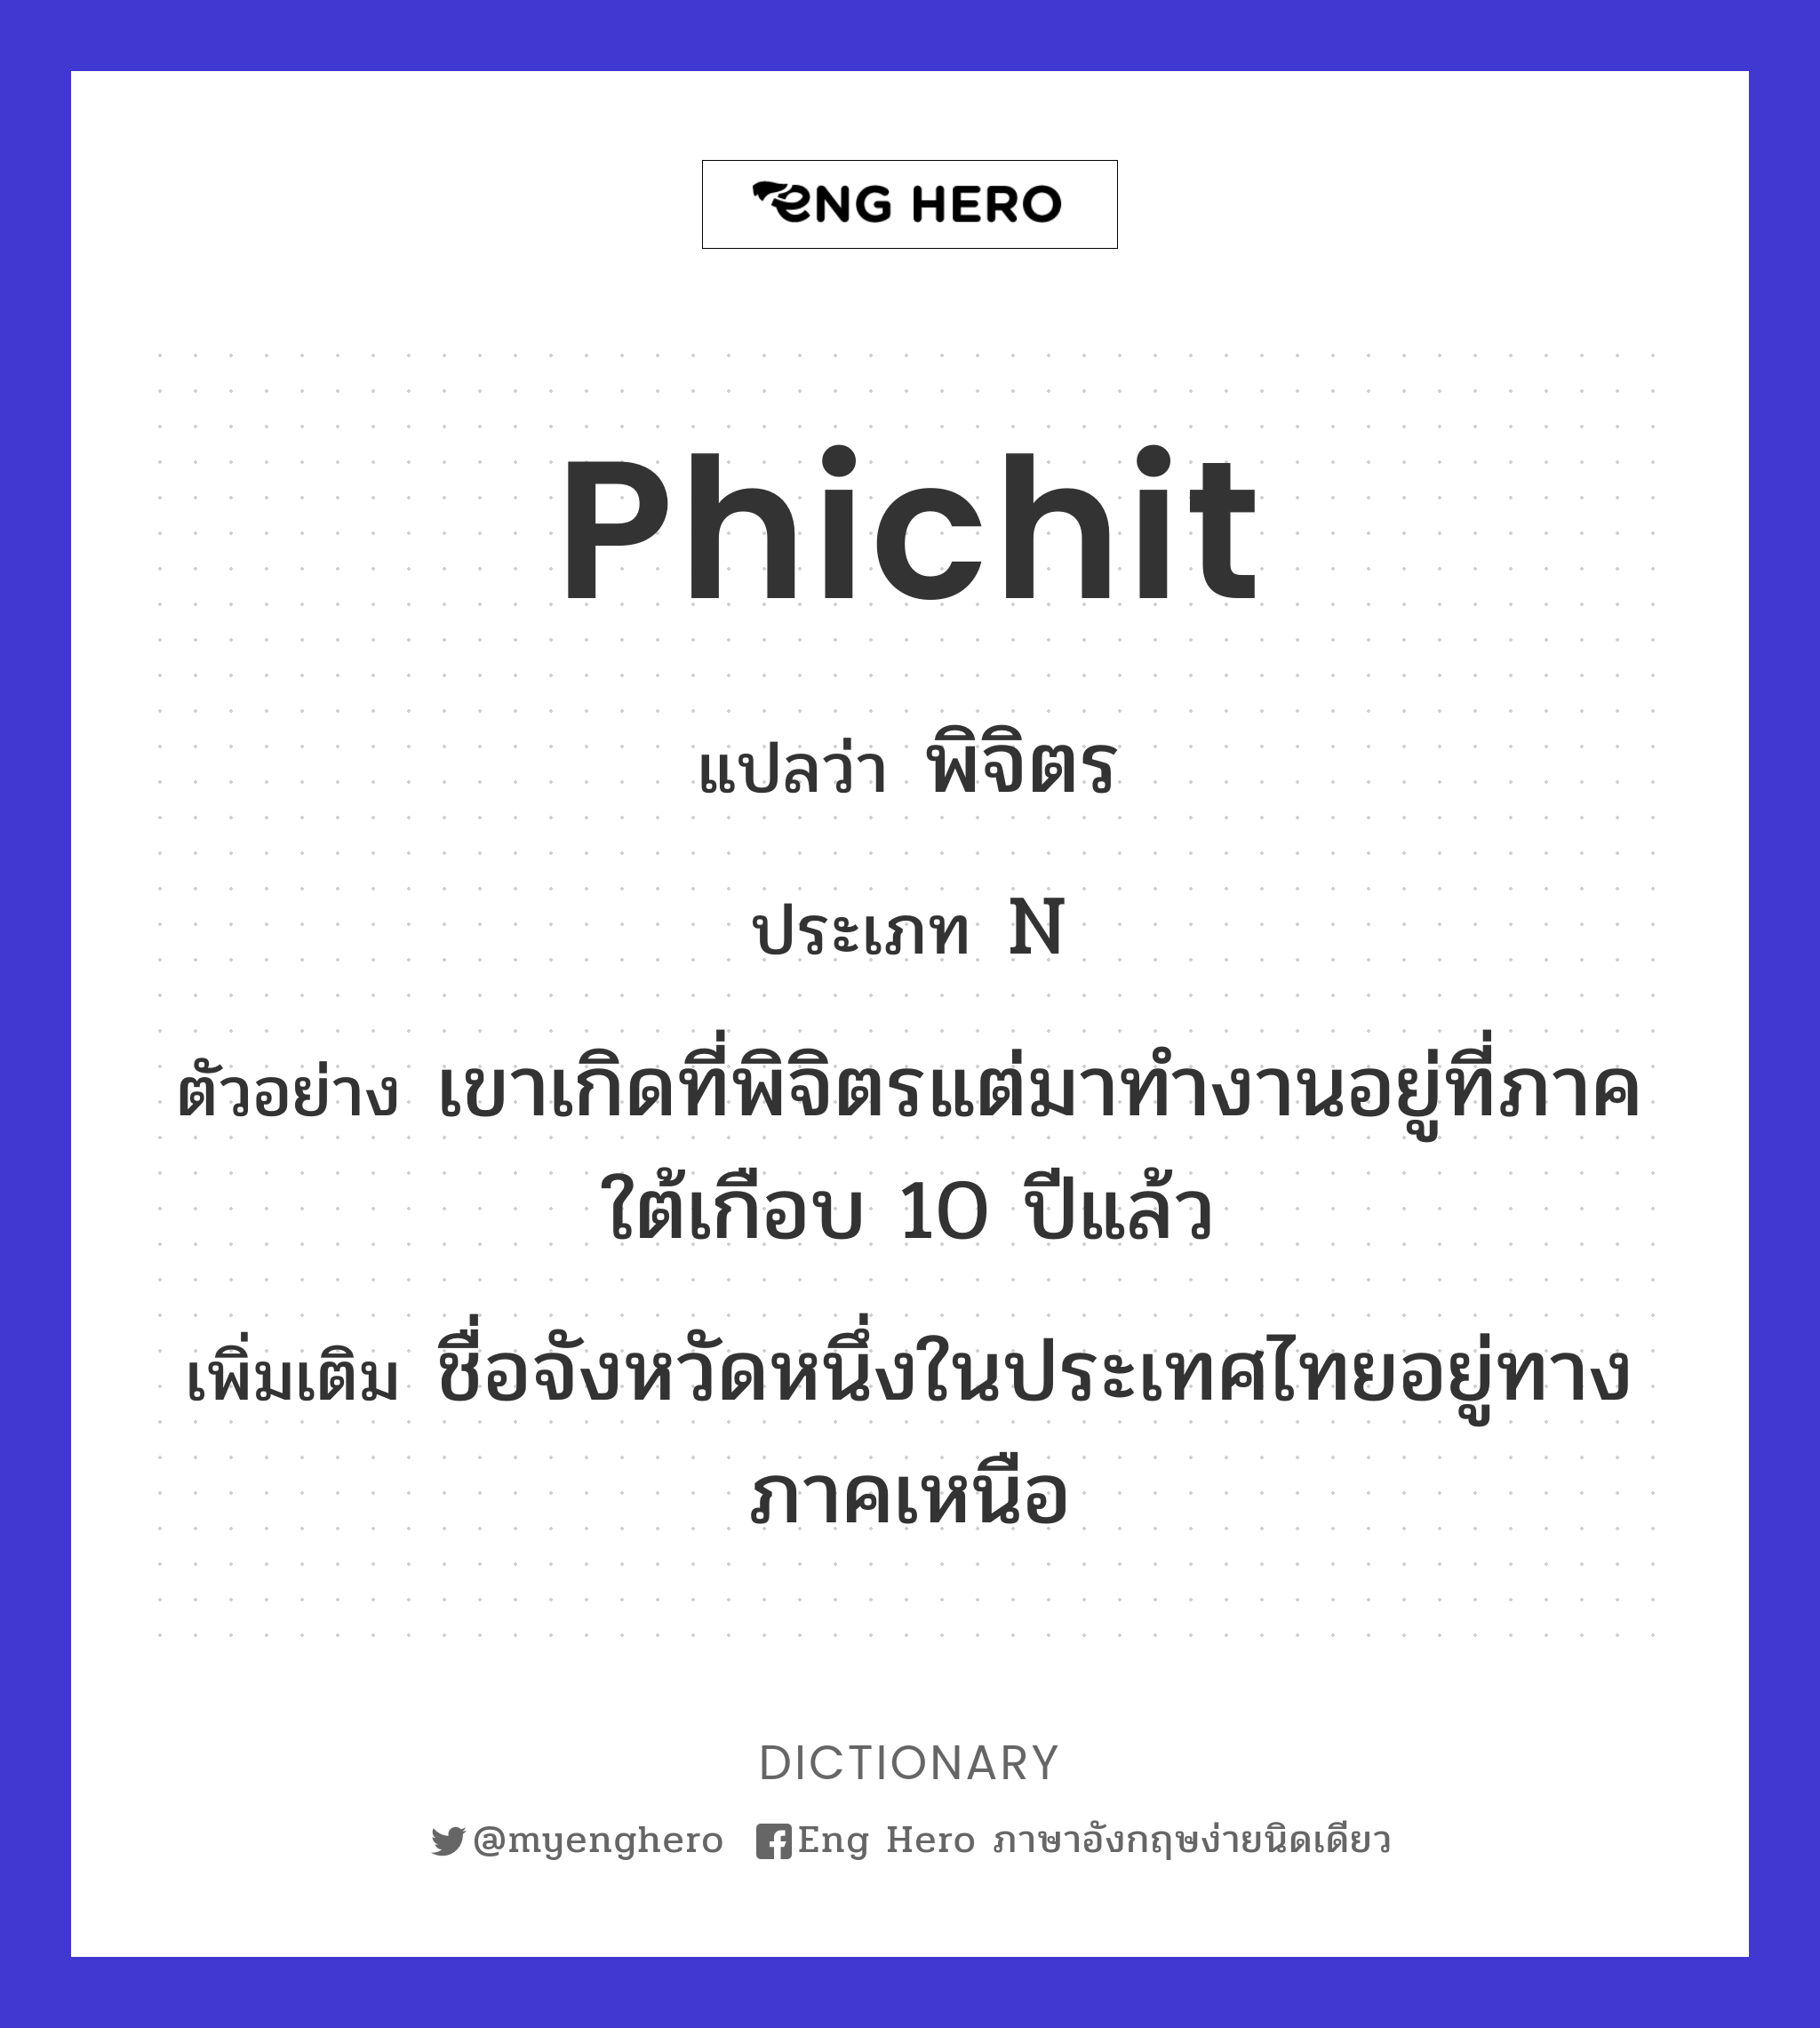 Phichit